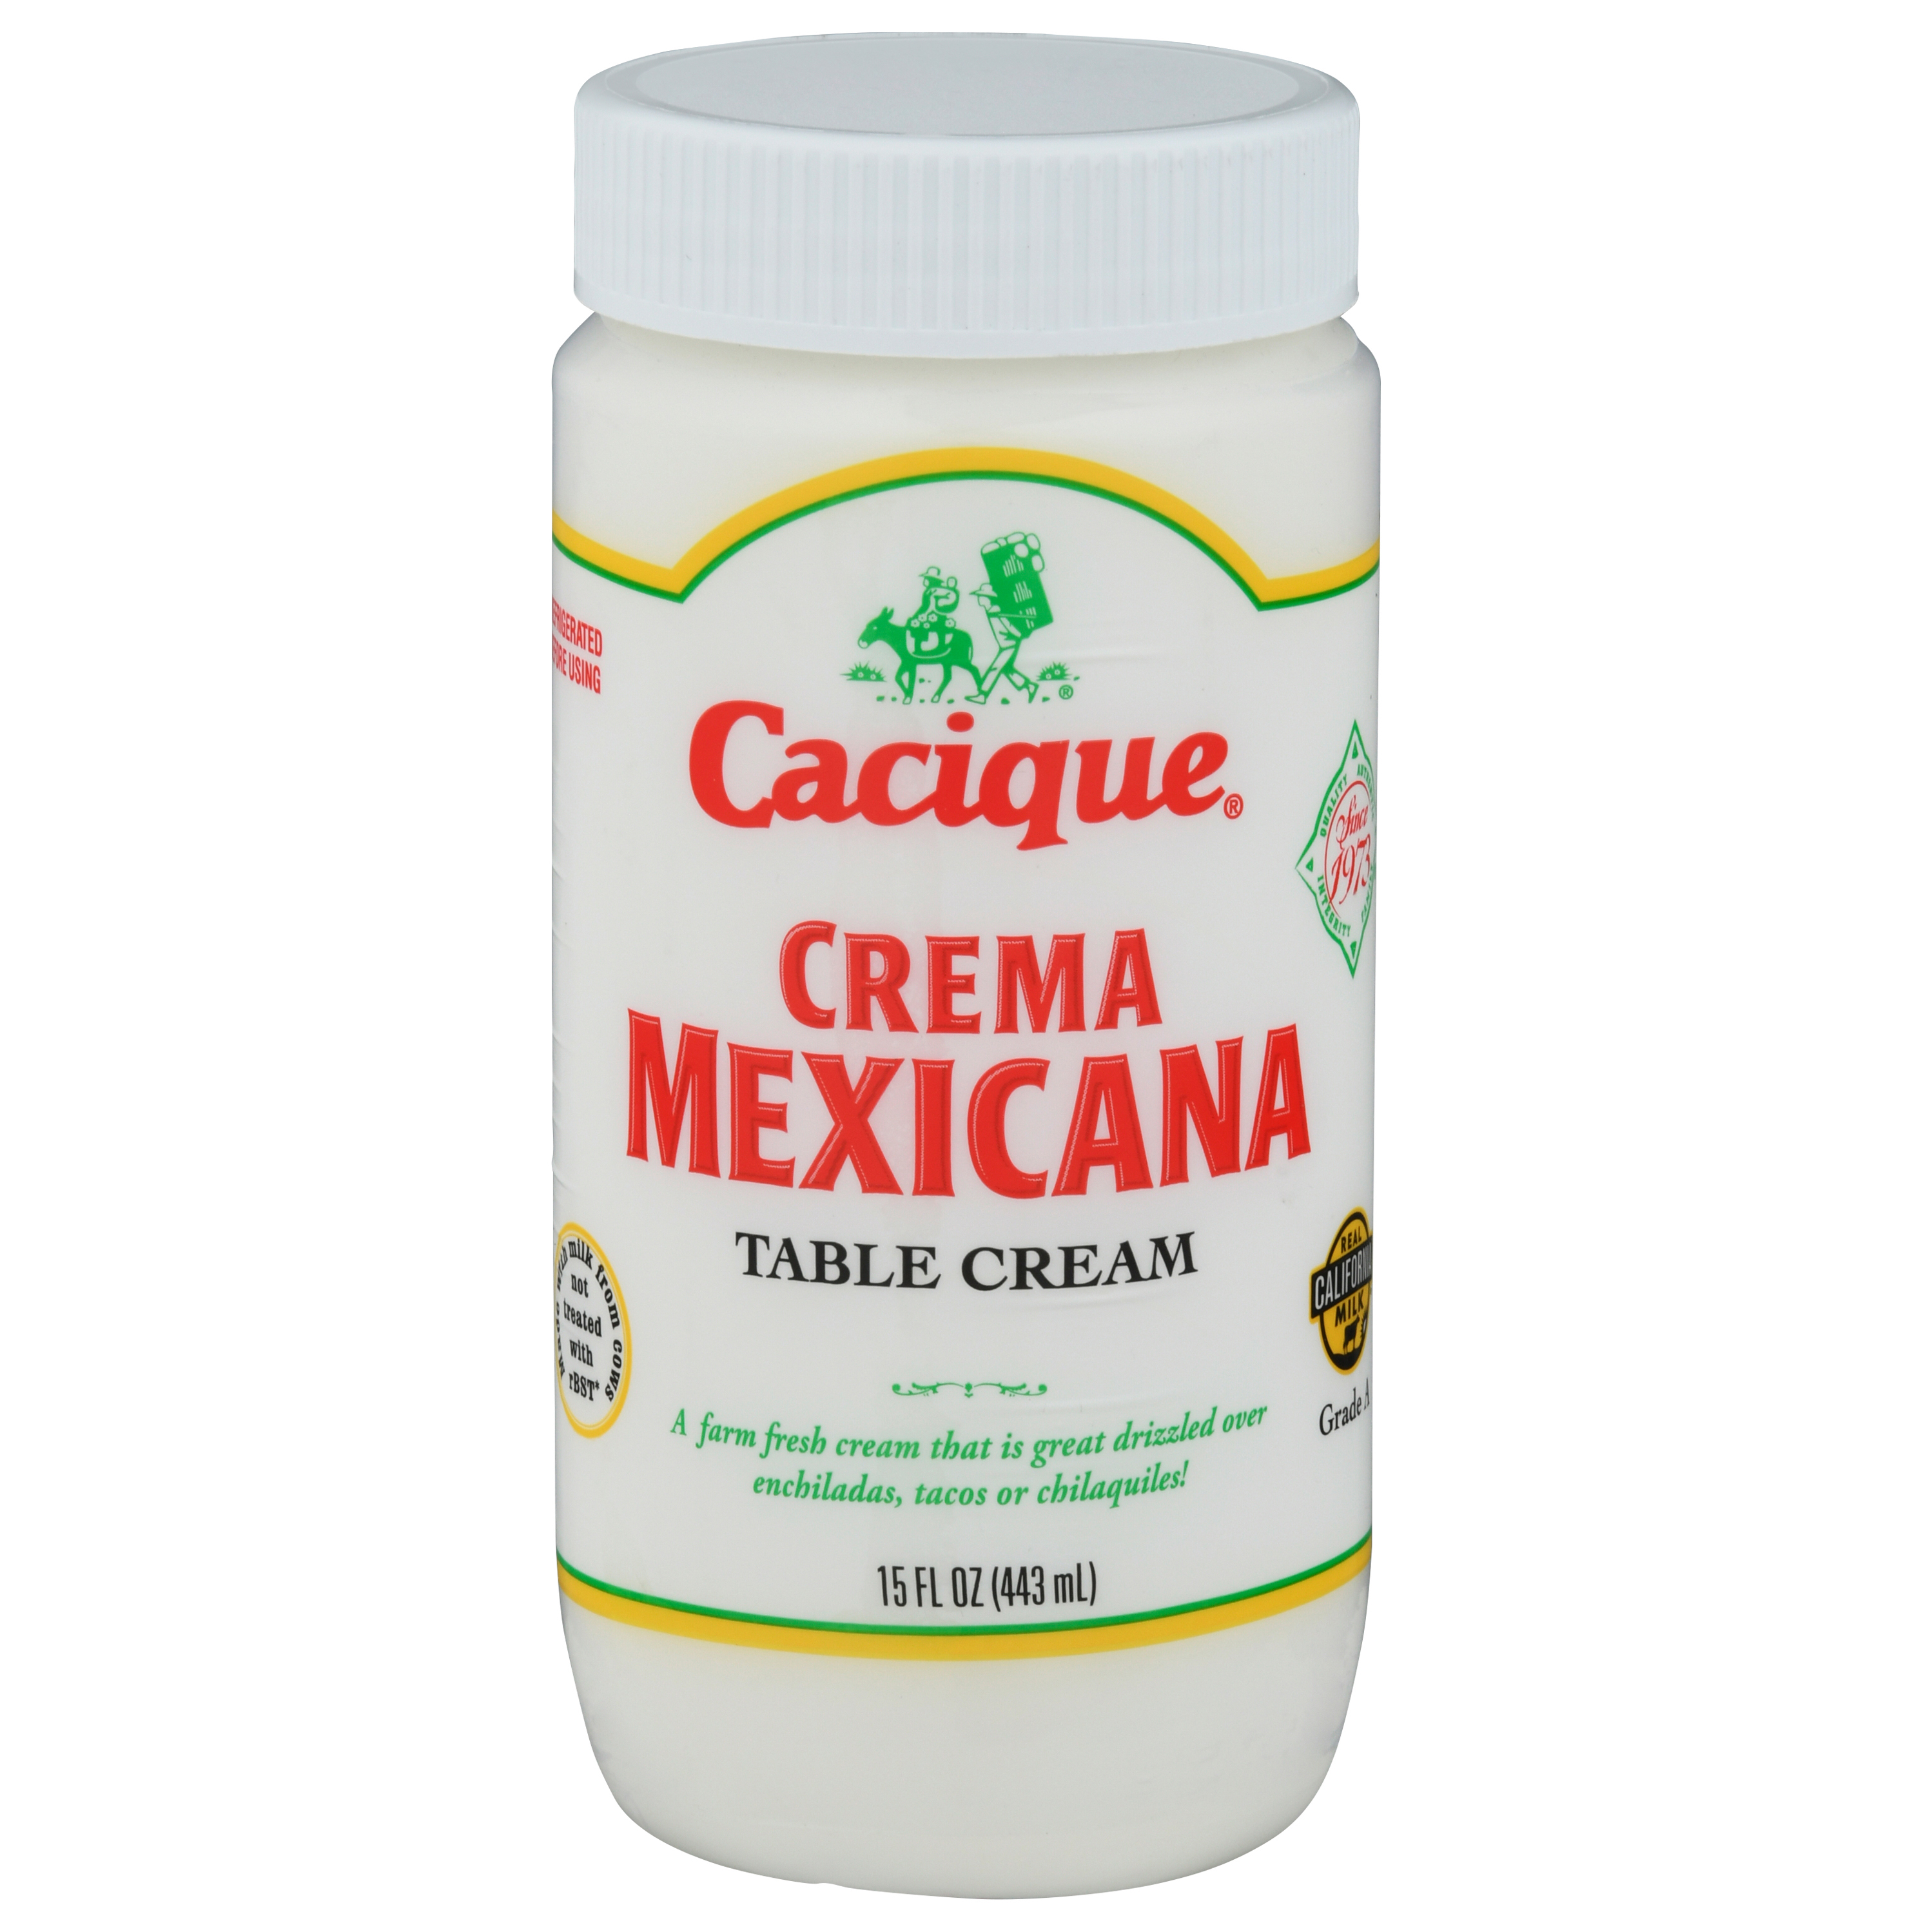 Get Cacique Crema Mexicana Table Cream Delivered